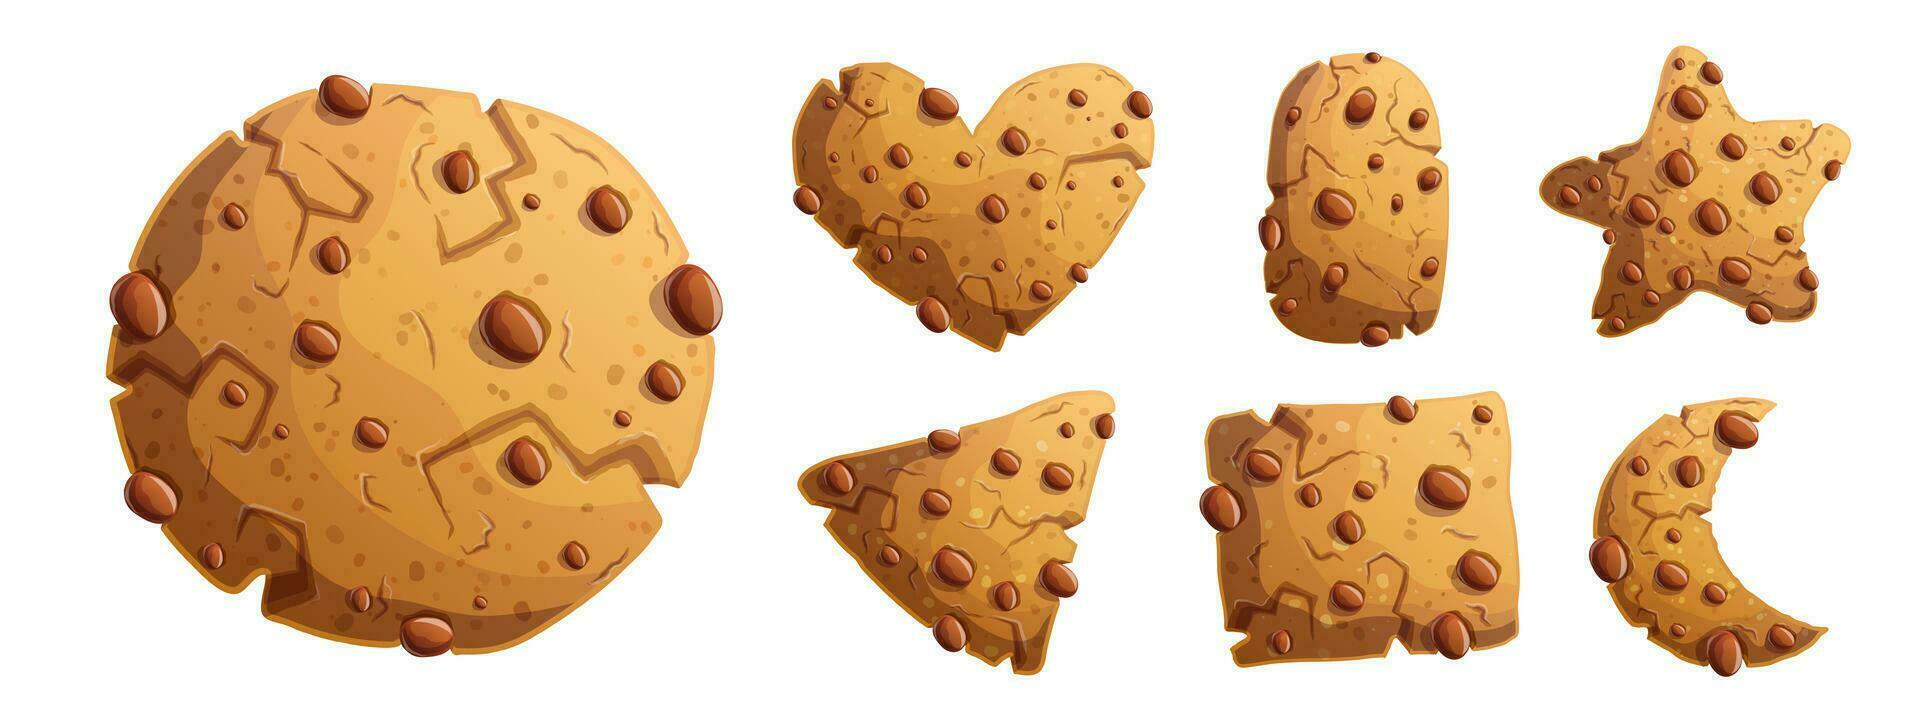 tradizionale cioccolato biscotti nel diverso le forme. il giro, triangolare, quadrato, stella e cuore sagomato cioccolato biscotti. impostato di vettore dettagliato cartone animato illustrazioni.